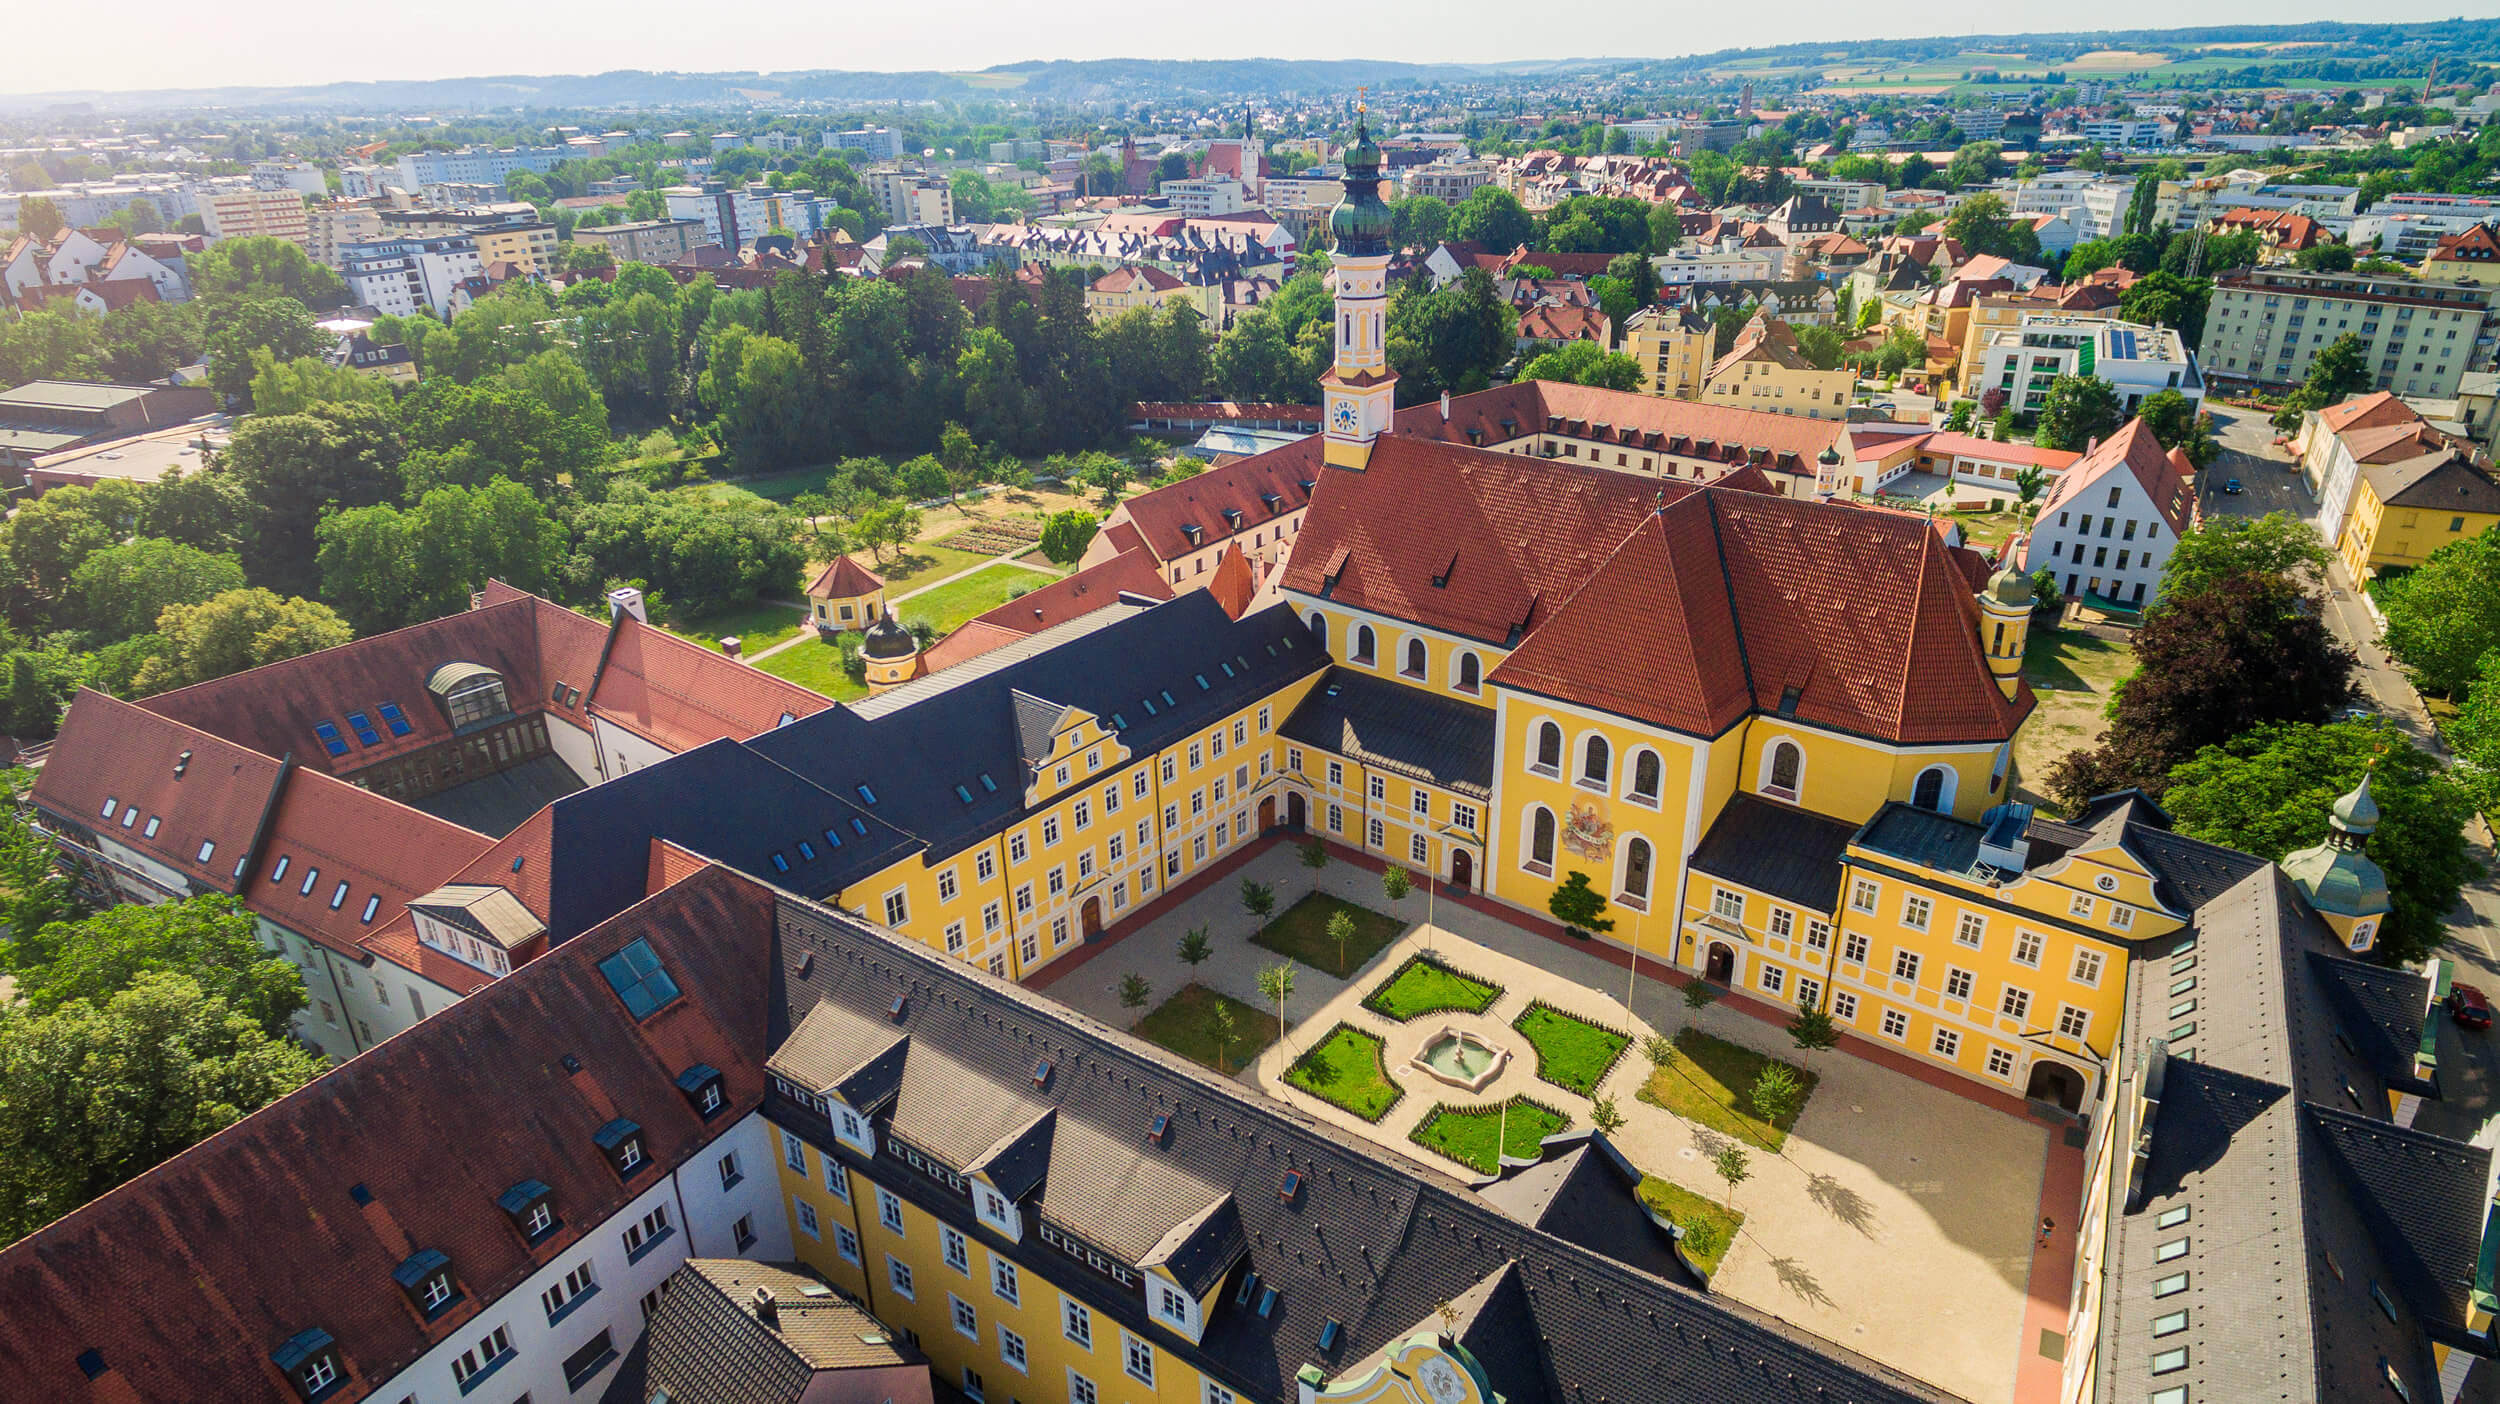 Abtei und Bildungszentrum Seligenthal in Landshut von oben